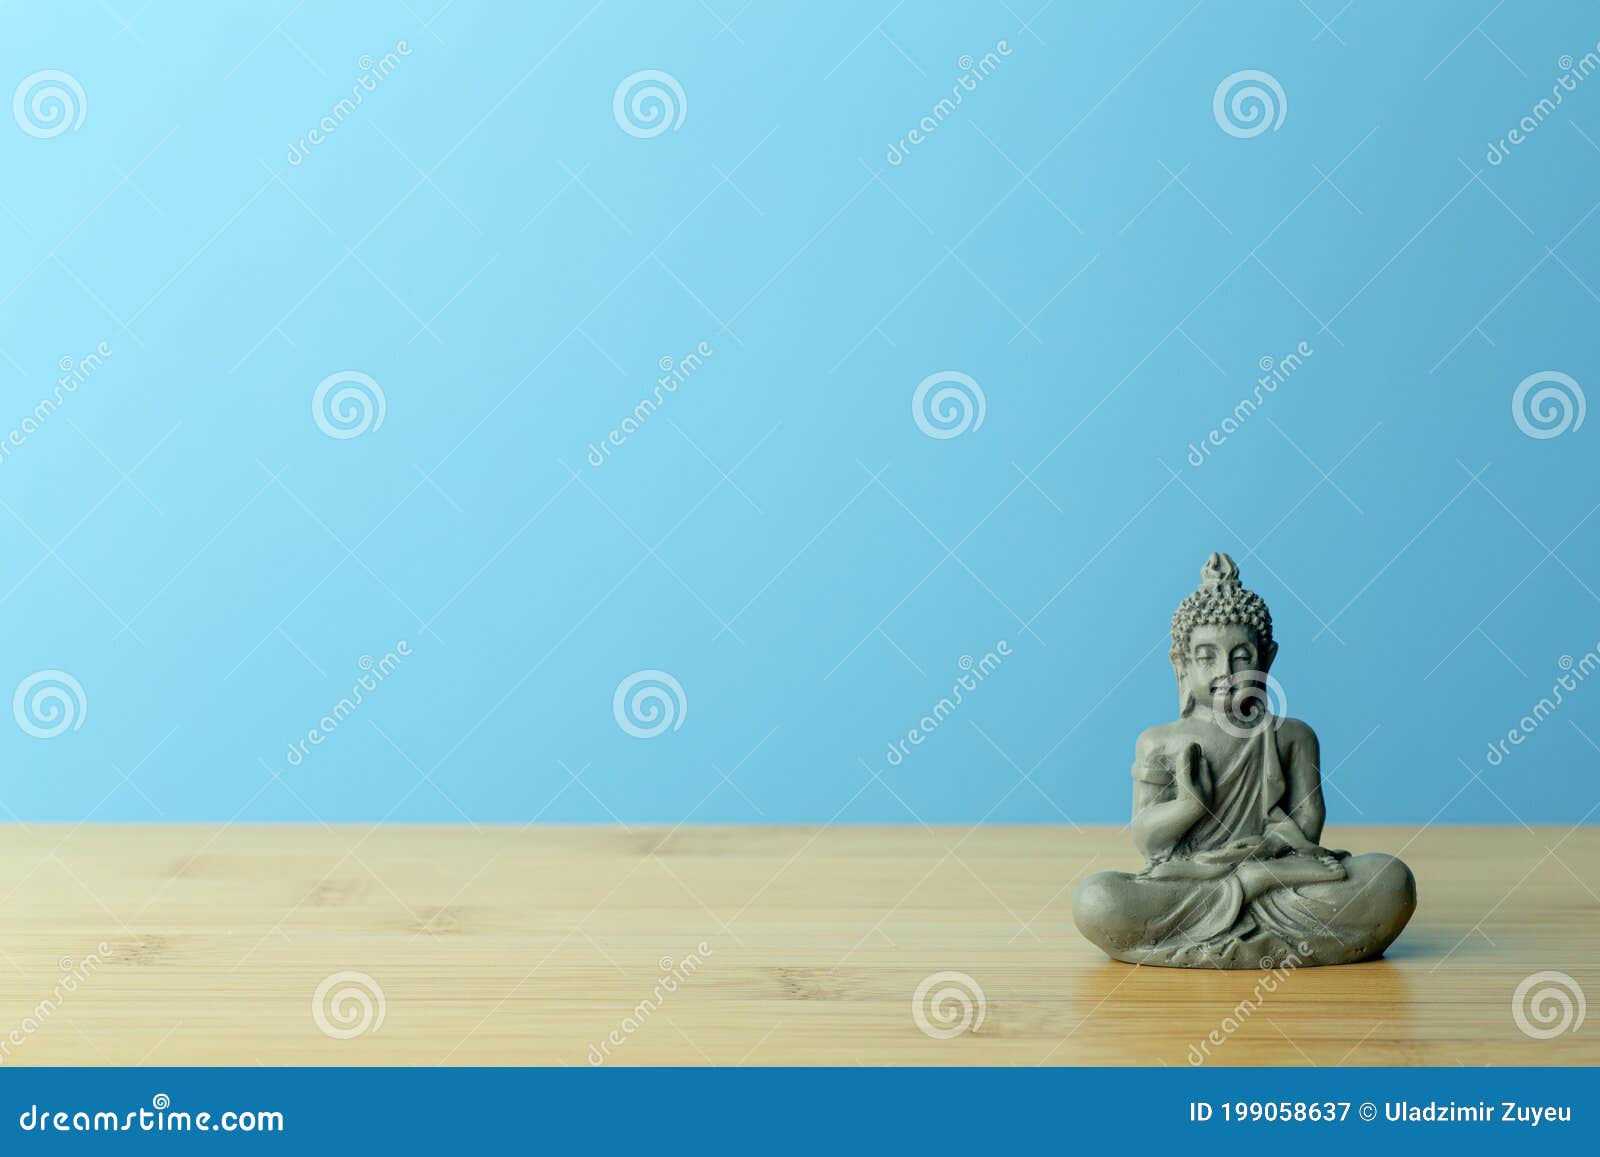 Achtergrond Voor Diepte En Ontspanning. Boeddha - Beeld Op Een Lege Kalme Blauwe Achtergrond Stock - Image of gras, begrip: 199058637